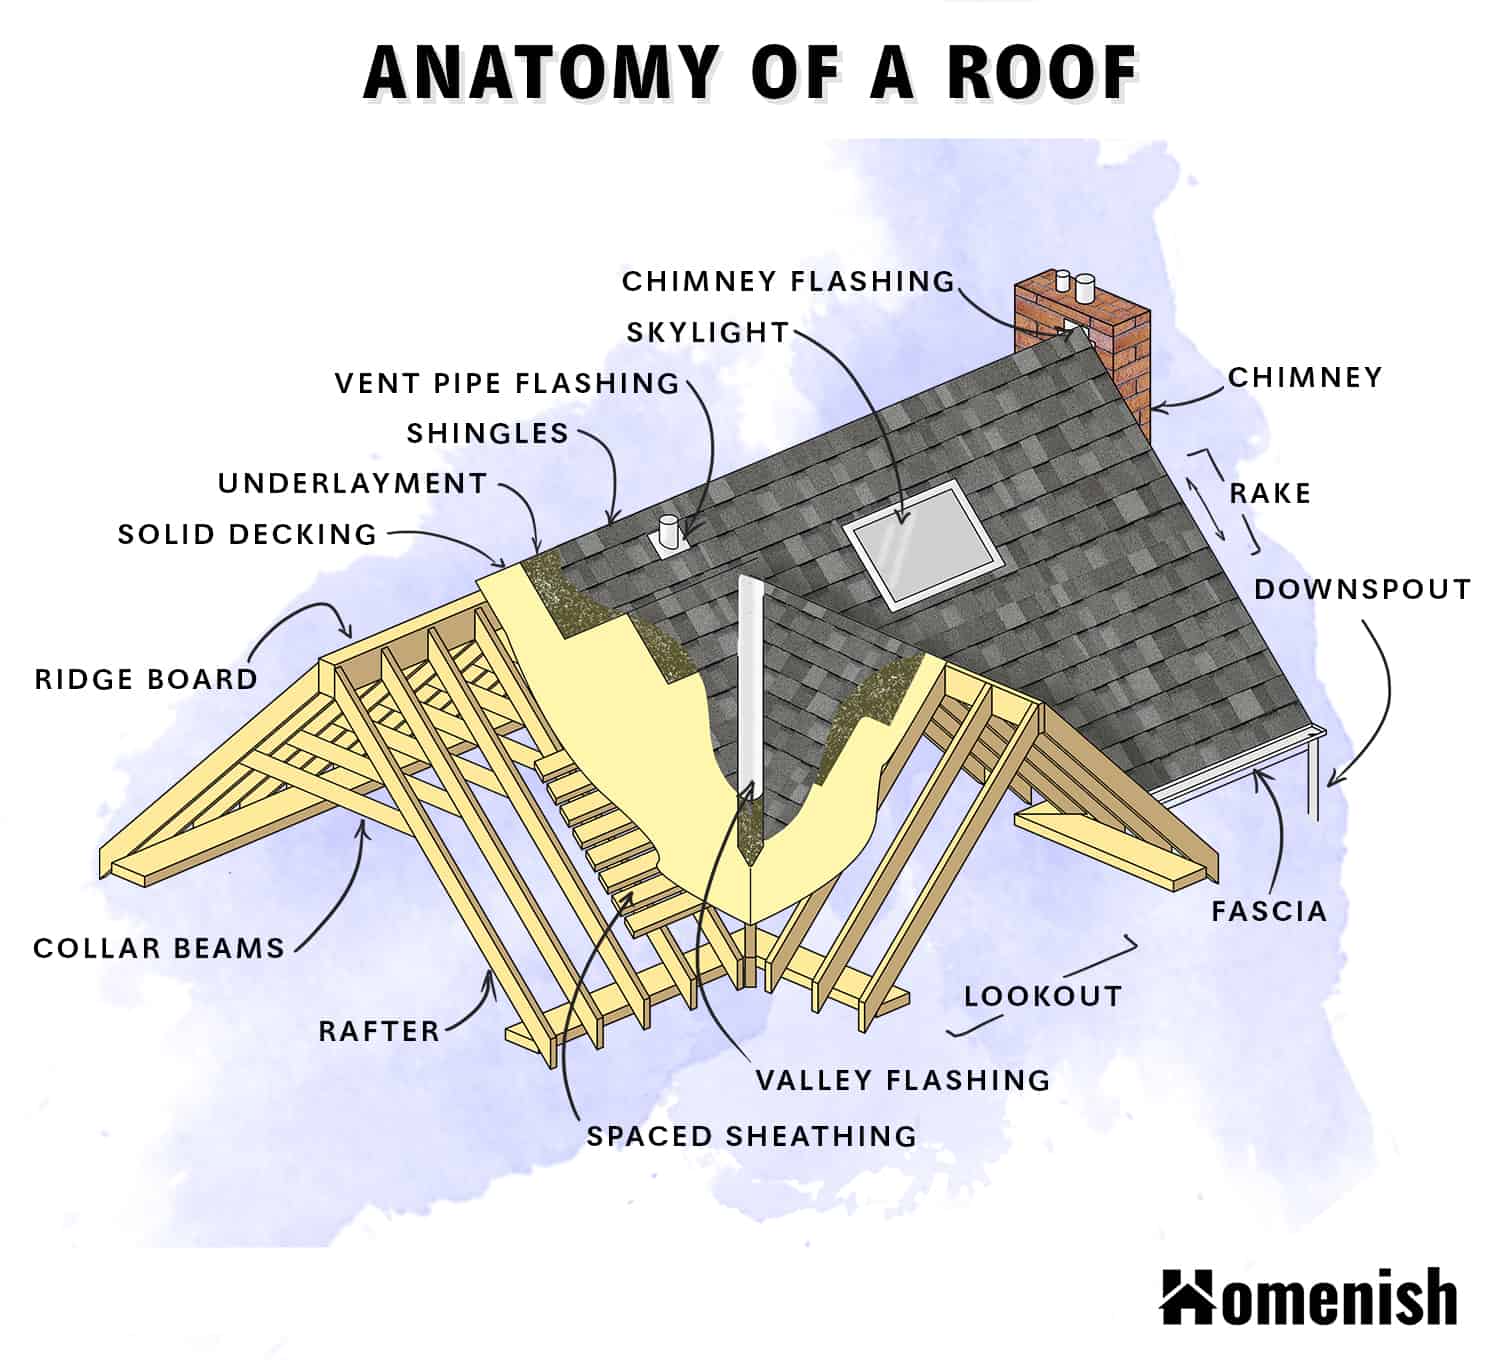 屋頂圖的部分